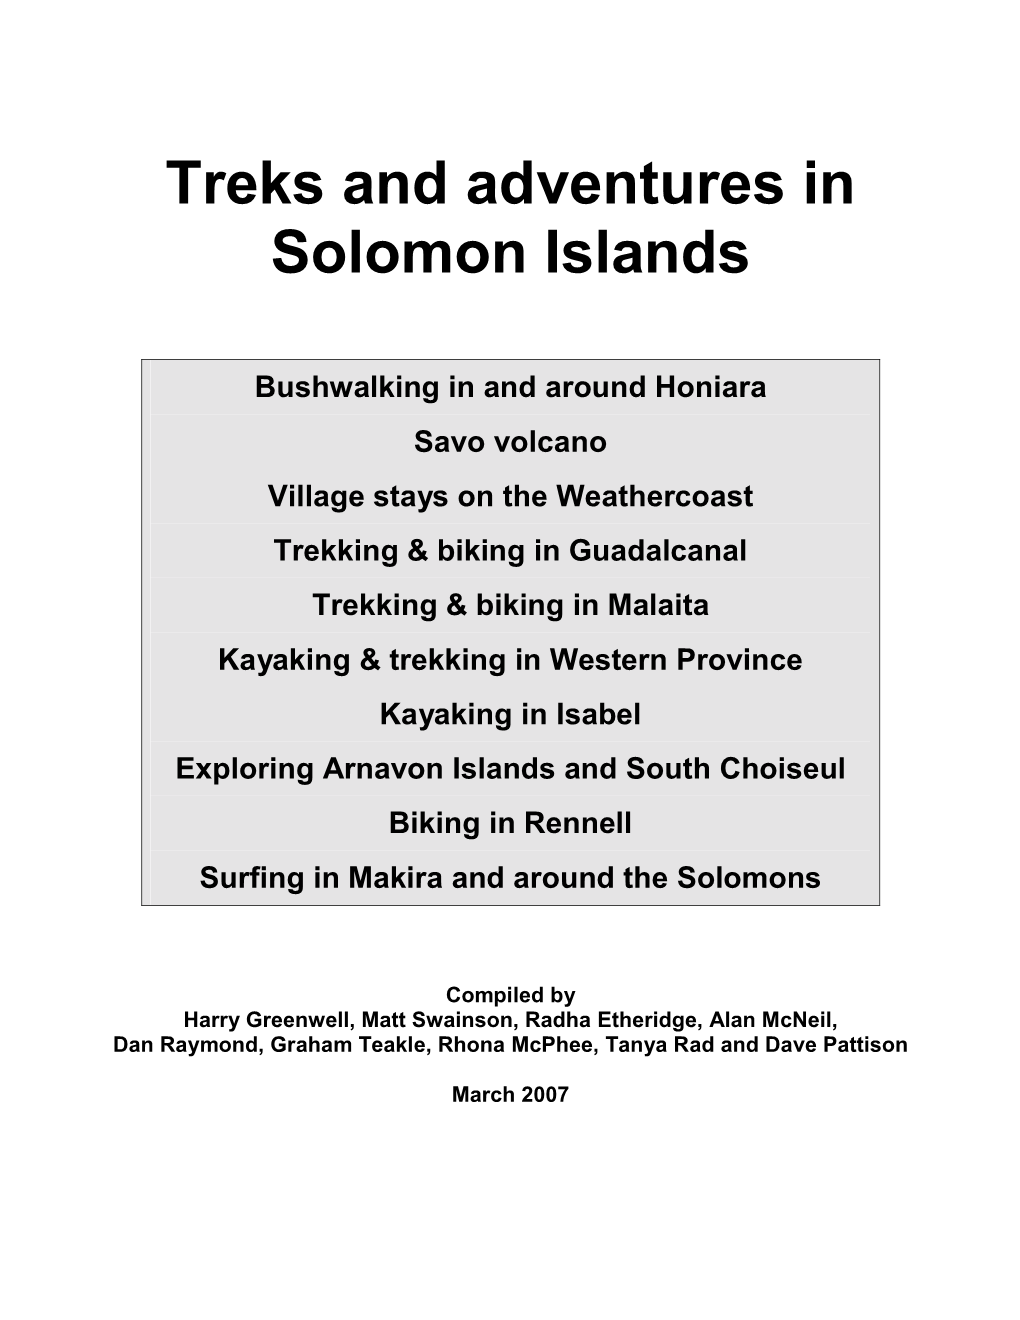 Treks and Adventures in Solomon Islands